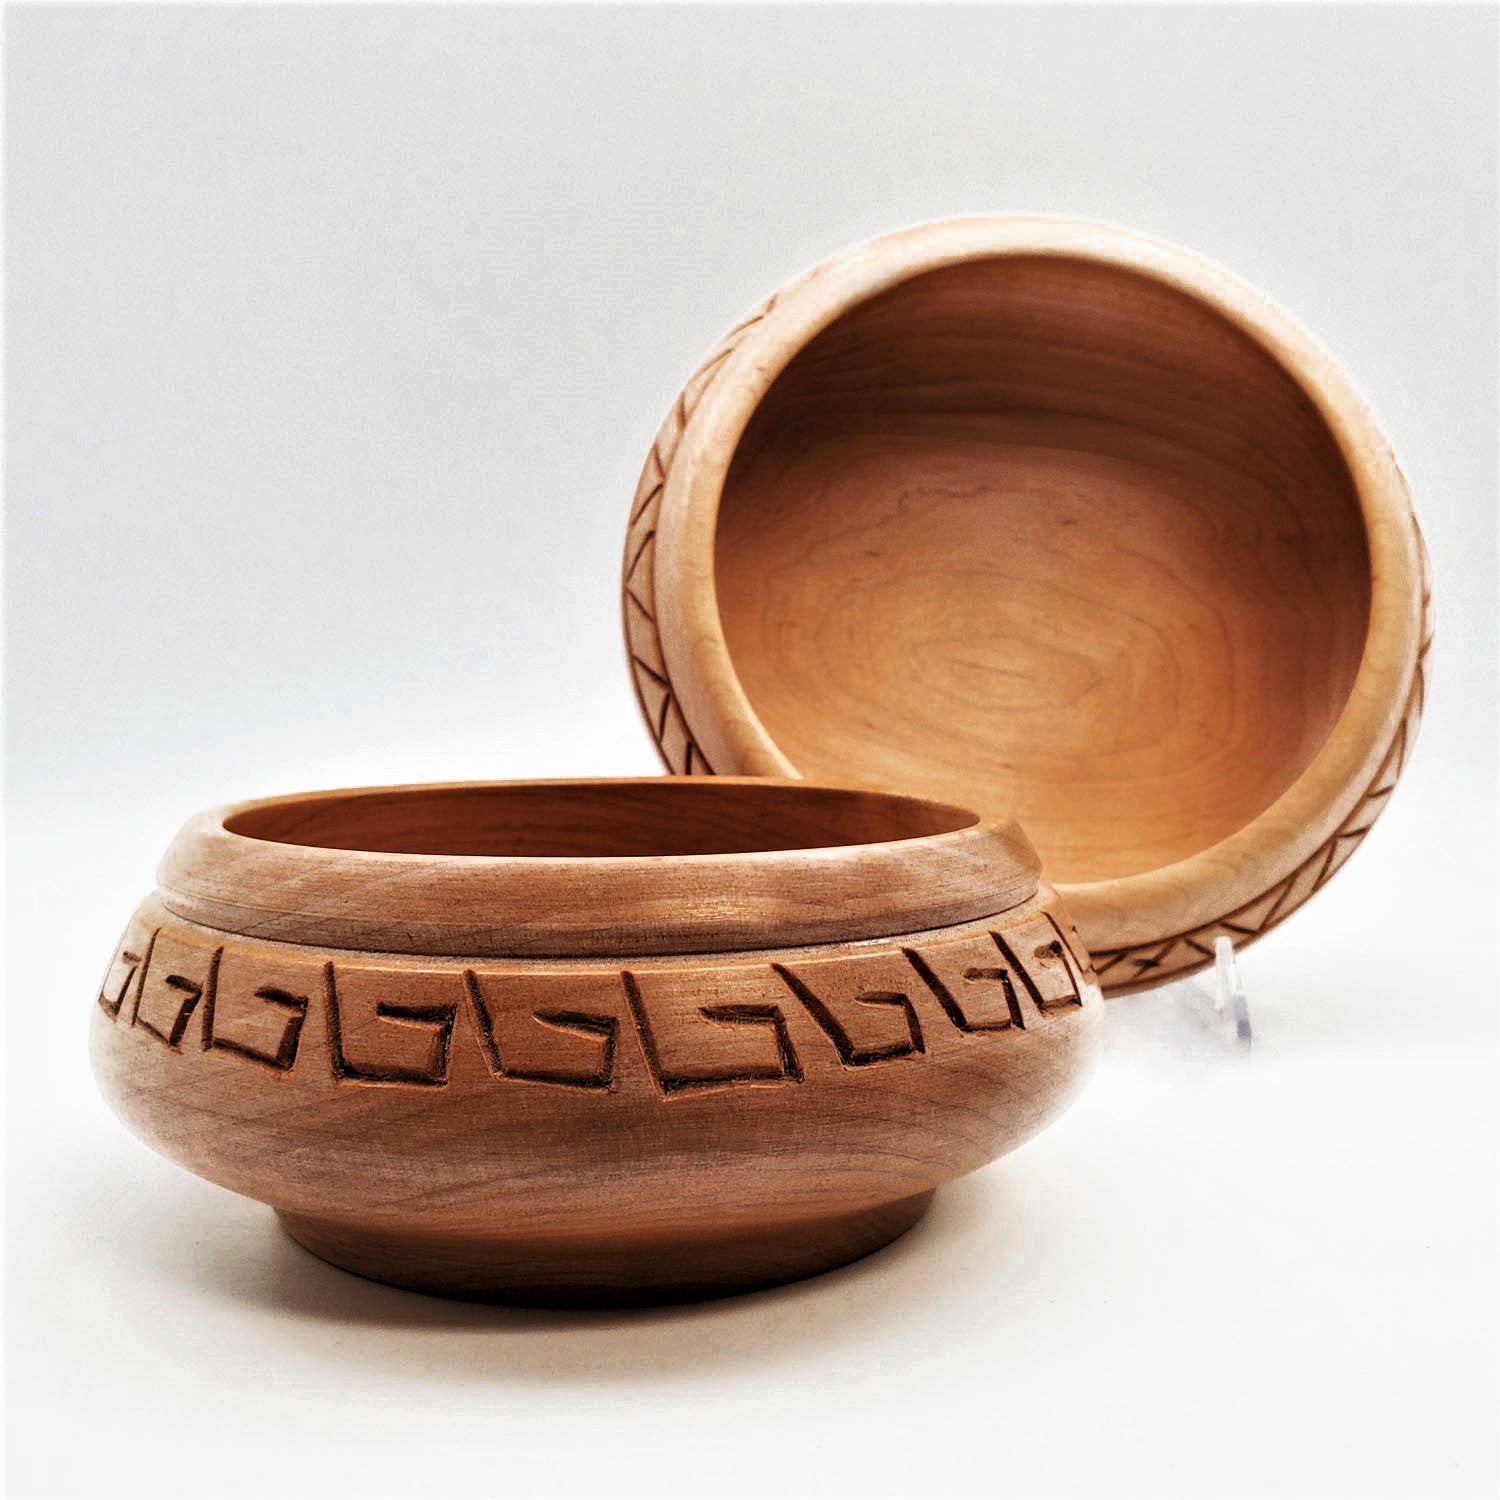 Bowl - Carved